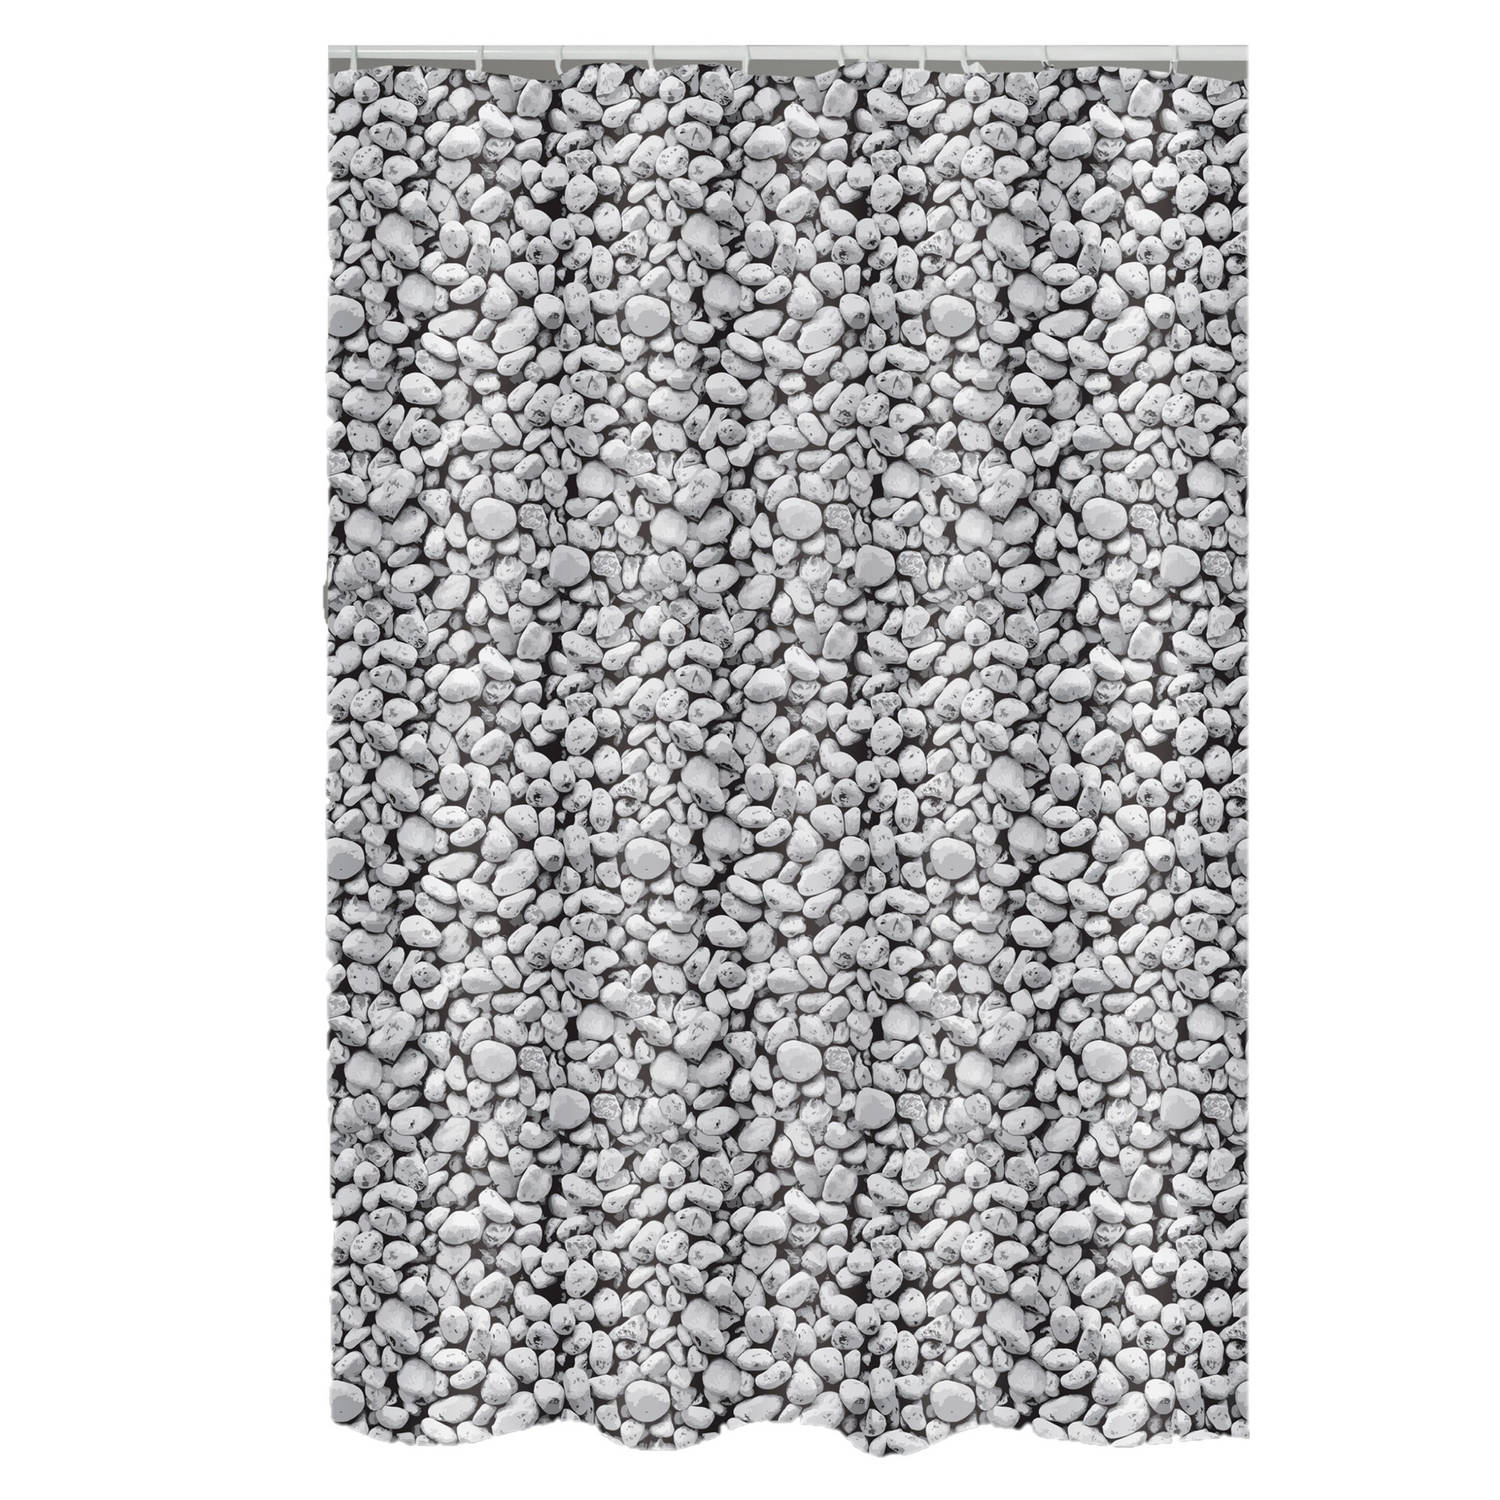 MSV Douchegordijn met ringen - grijs - kiezels print - Polyester - 180 x 200 cm - wasbaar - Voor bad en douche